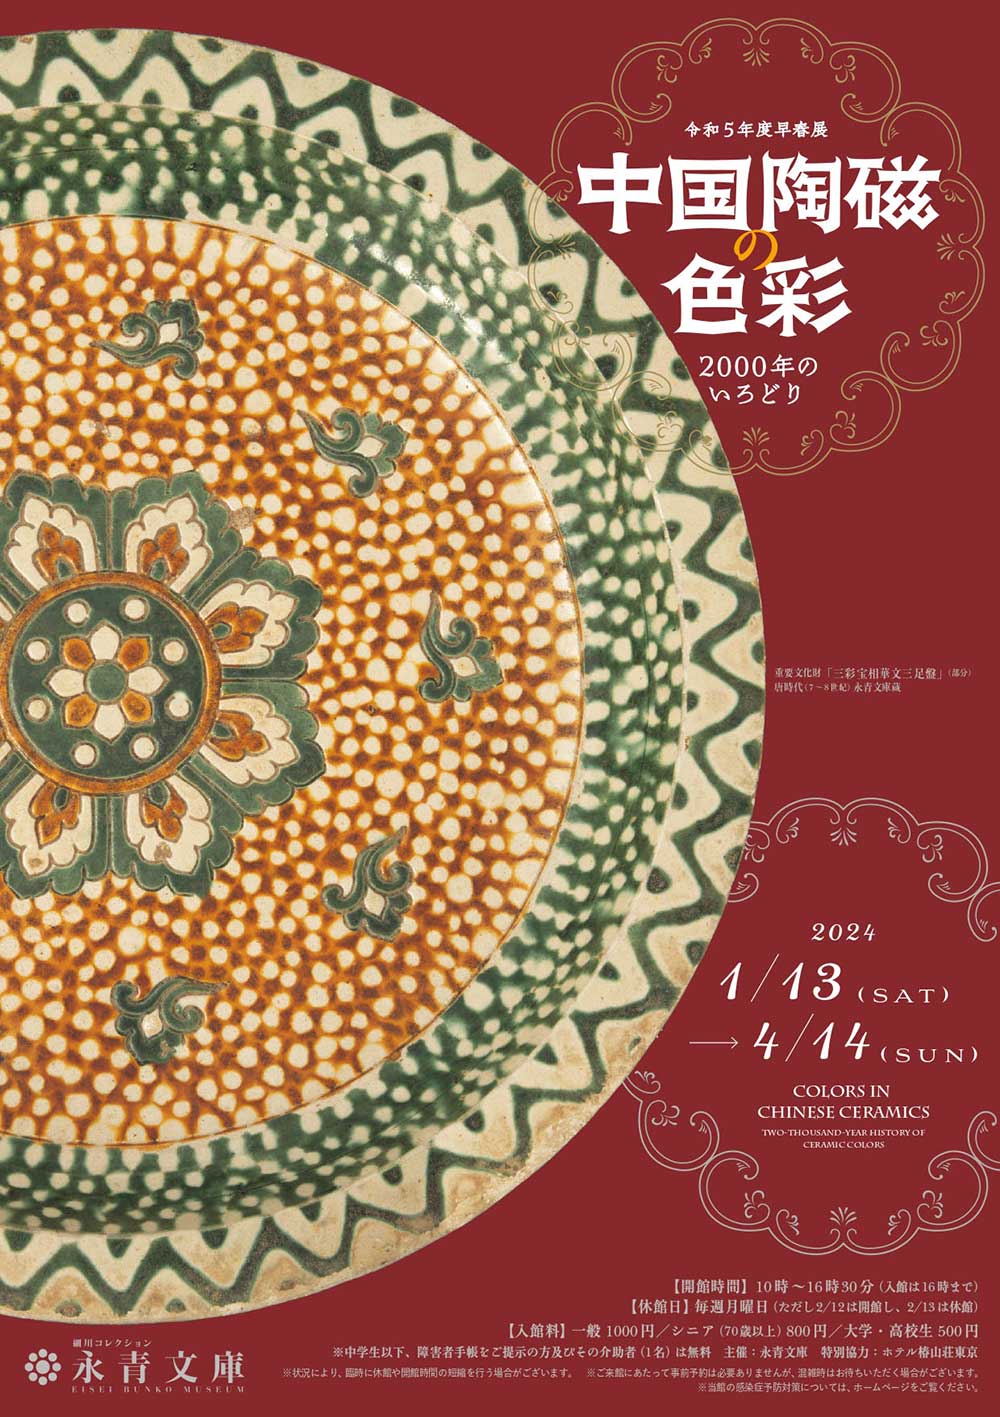 唐三彩、白磁、青磁、五彩、黒釉――「色」をテーマにした『中国陶磁の色彩』展